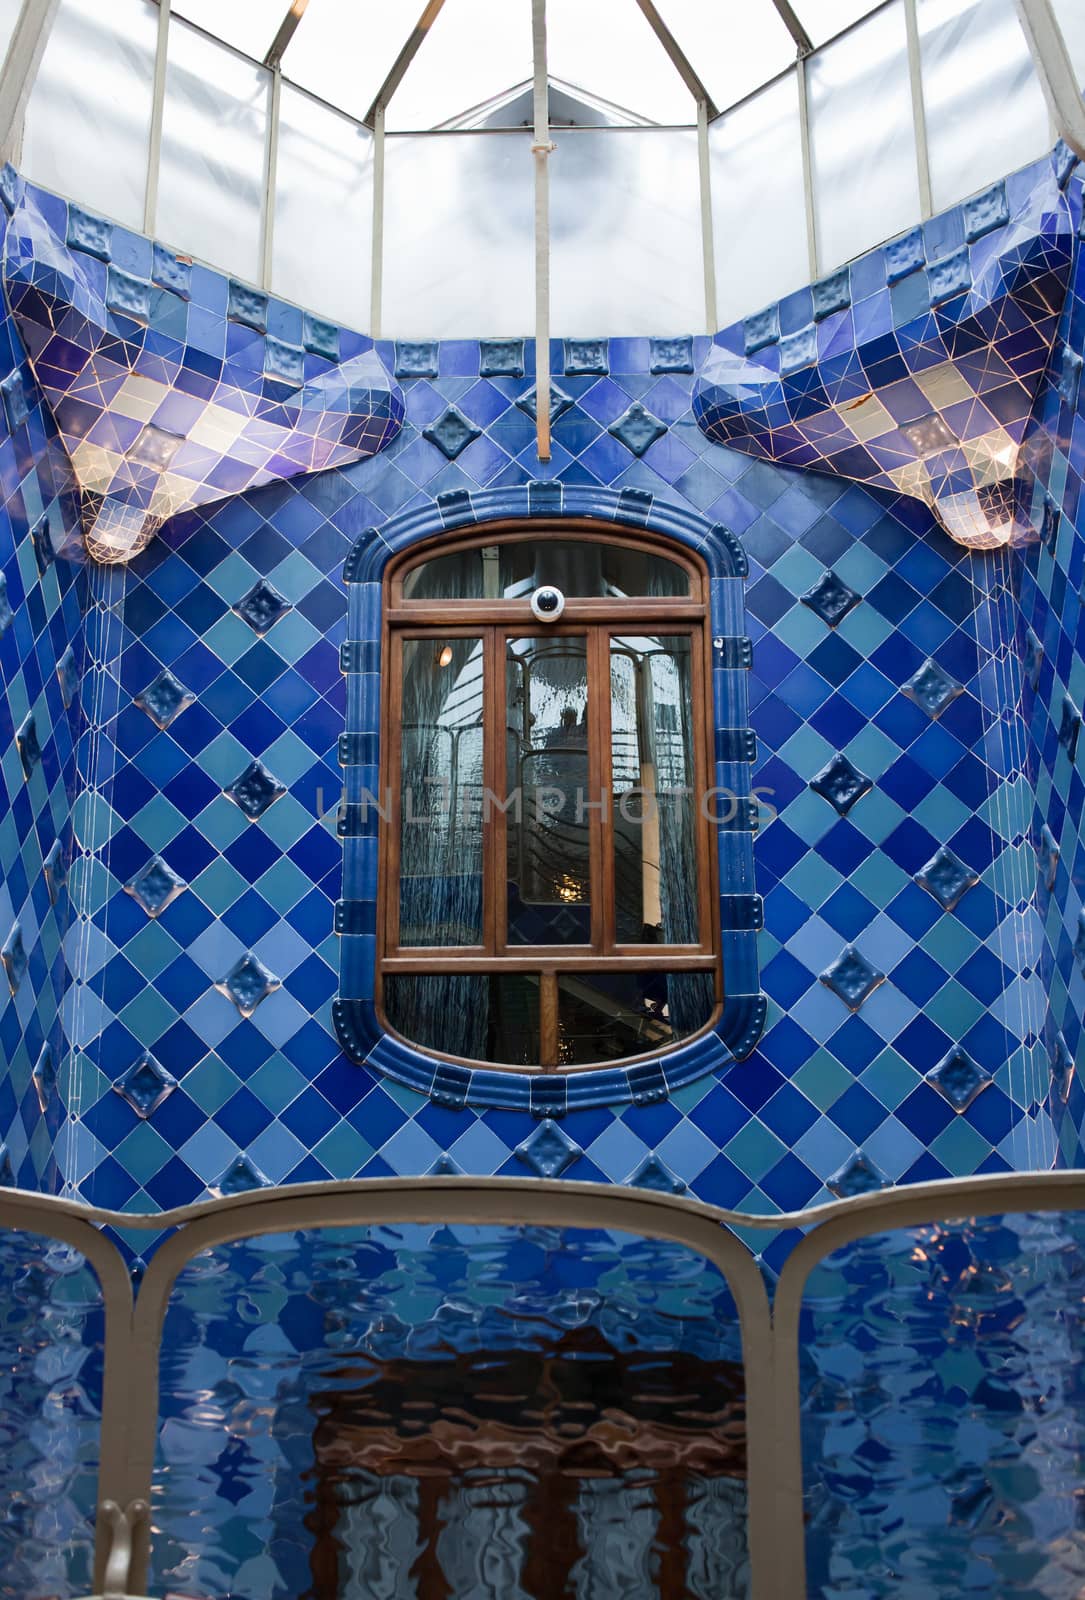 Casa Batllo interior Mozaic on the walls  Antonio Gaudi